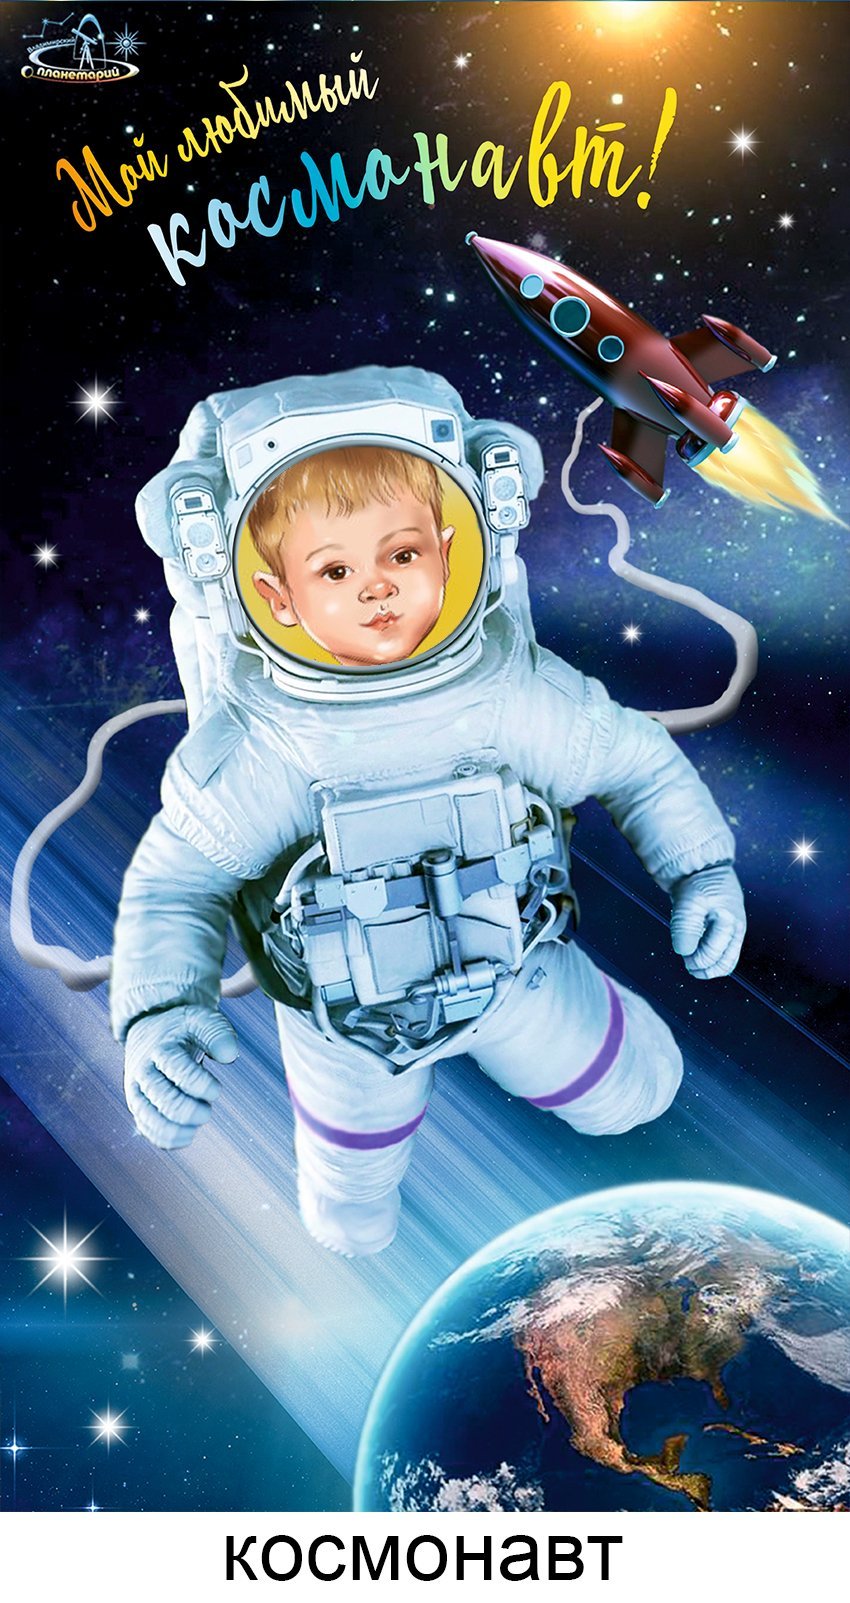 Детская вечеринка в стиле Космонавта